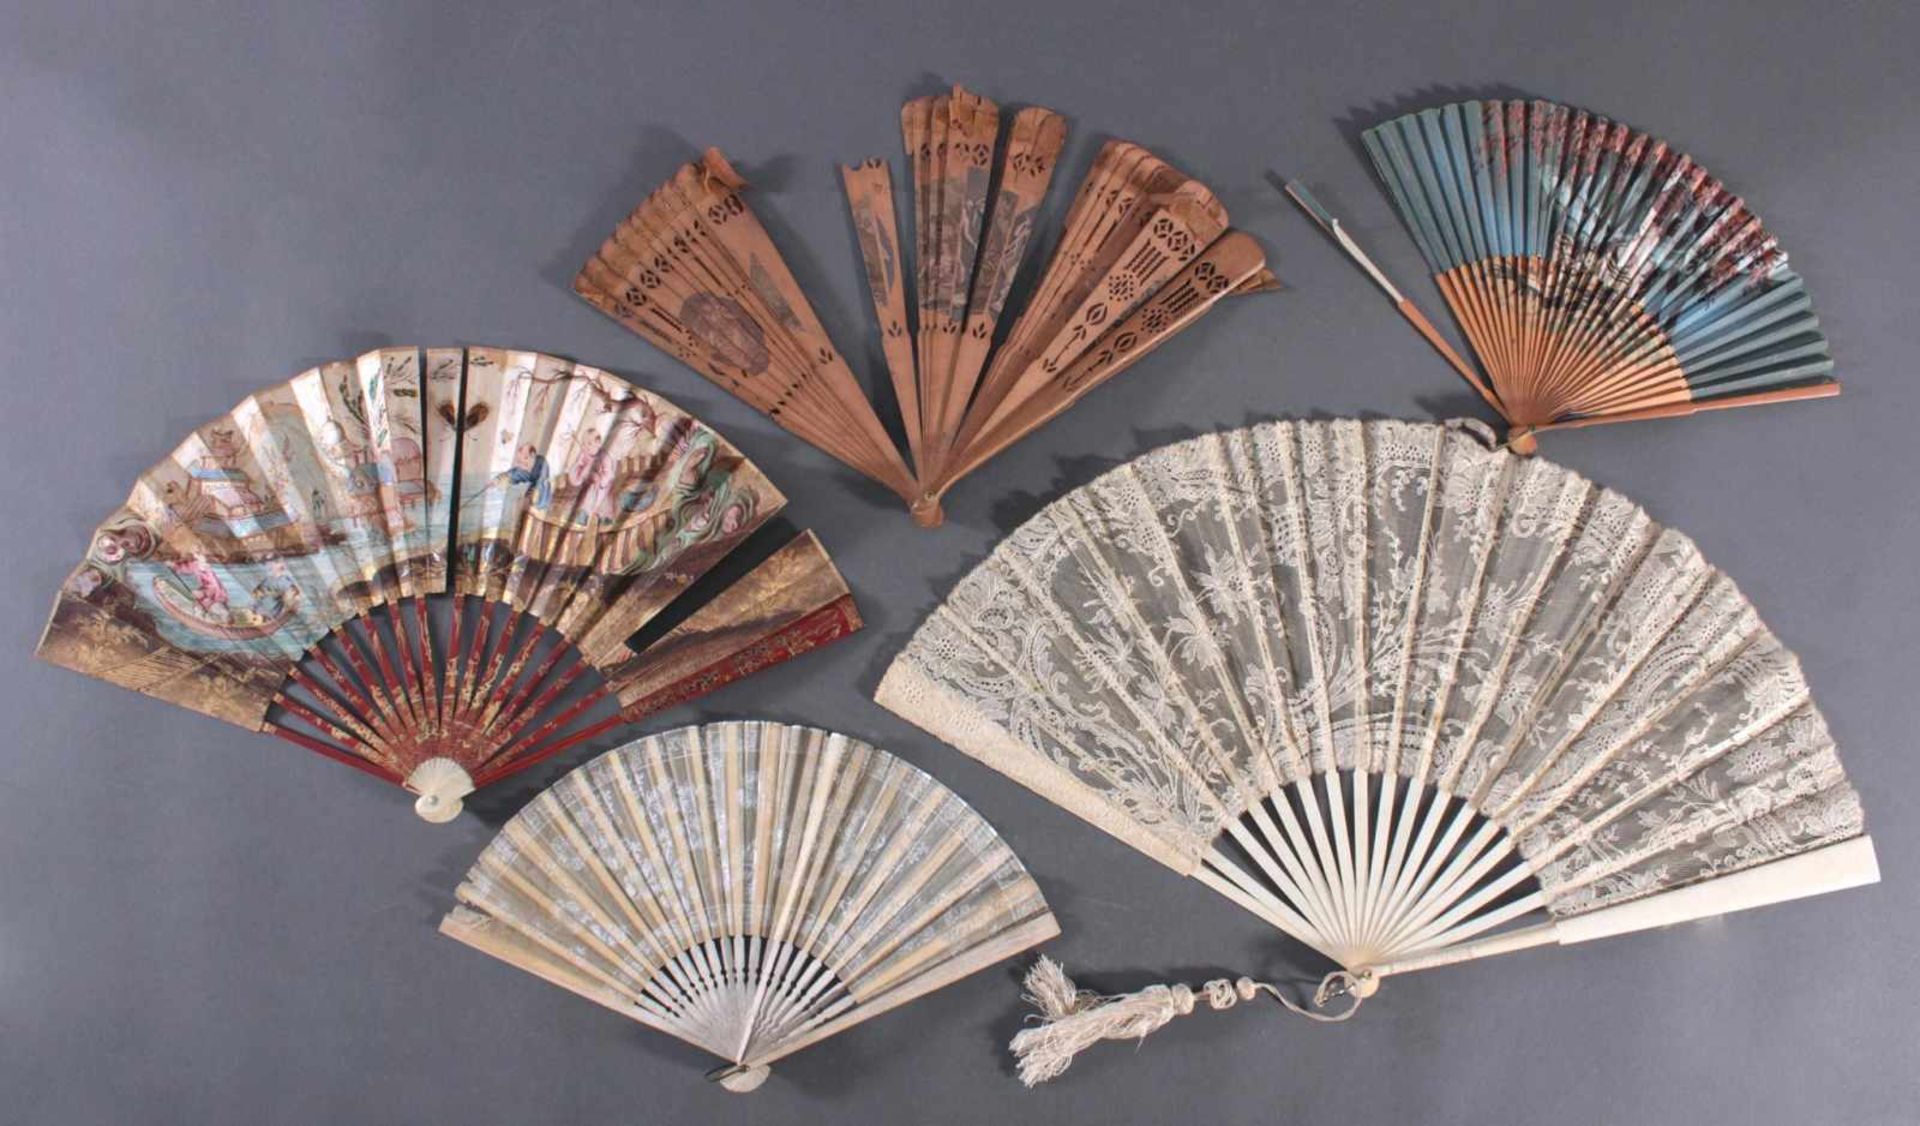 Fünf Fächer 18./19. Jahrhundert, Frankreich/AsienBein/Holz/Textil/Papier, ornamental durchbrochene